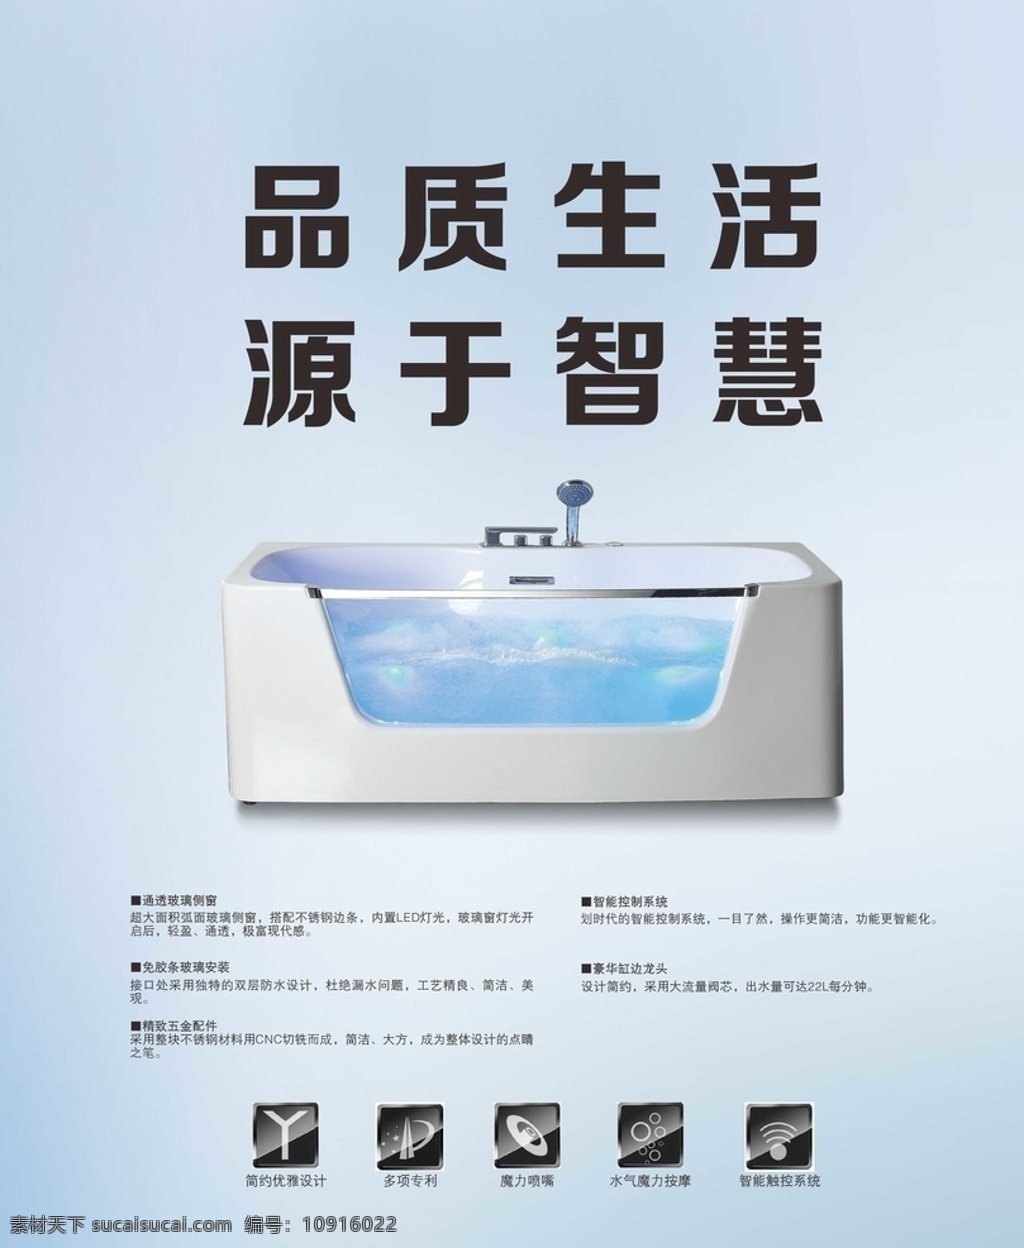 广告 品质生活 卫浴 品质 生活 浴缸